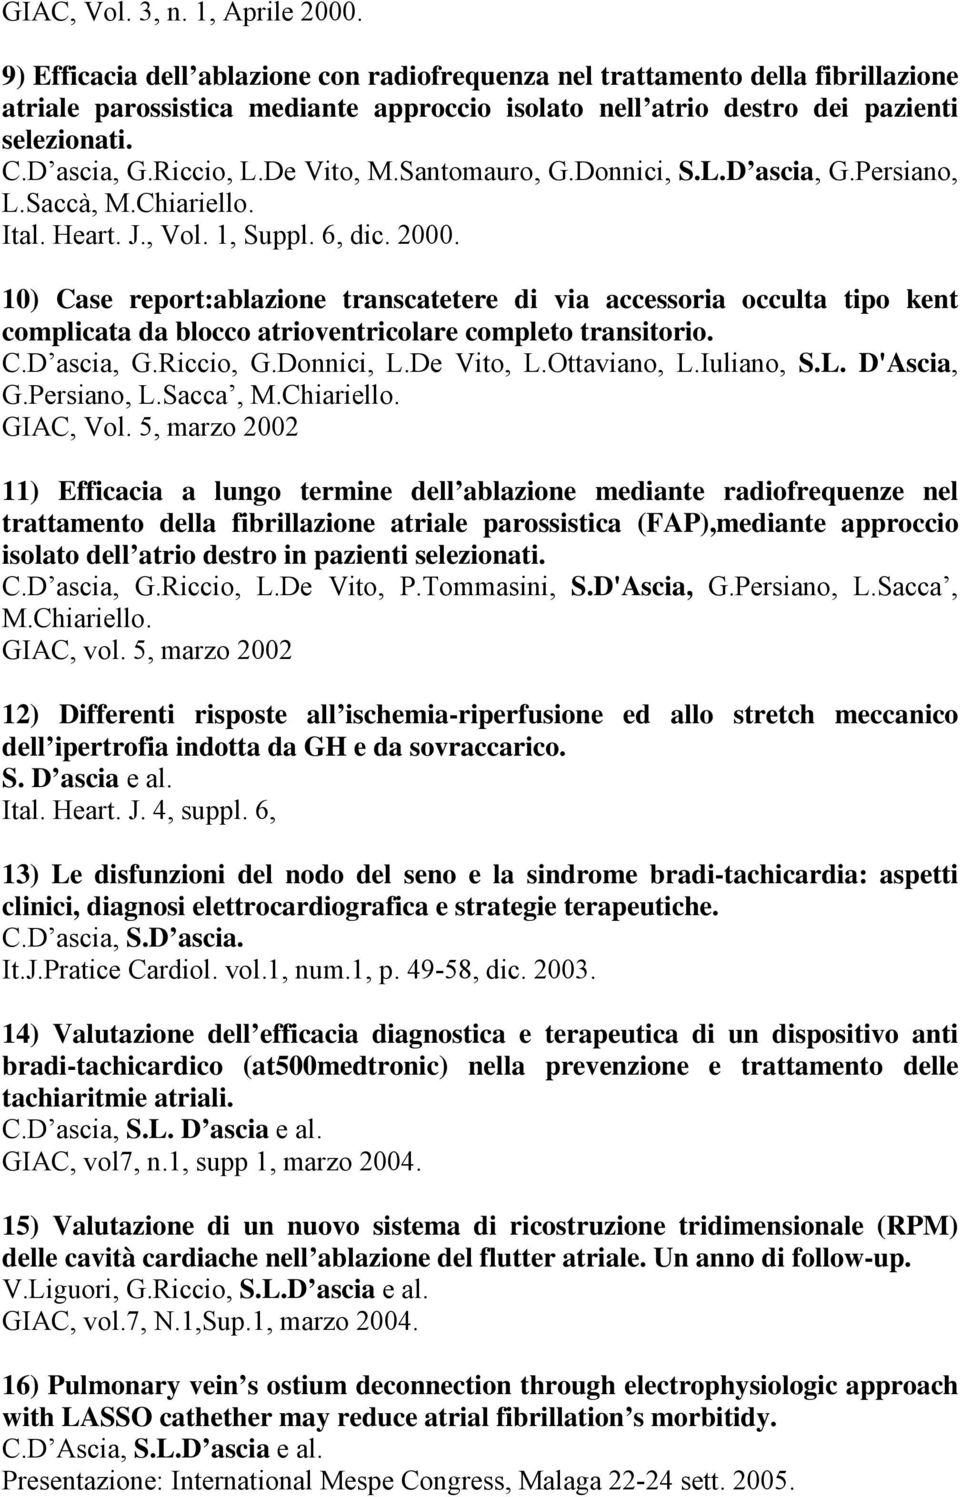 De Vito, M.Santomauro, G.Donnici, S.L.D ascia, G.Persiano, L.Saccà, M.Chiariello. Ital. Heart. J., Vol. 1, Suppl. 6, dic. 2000.